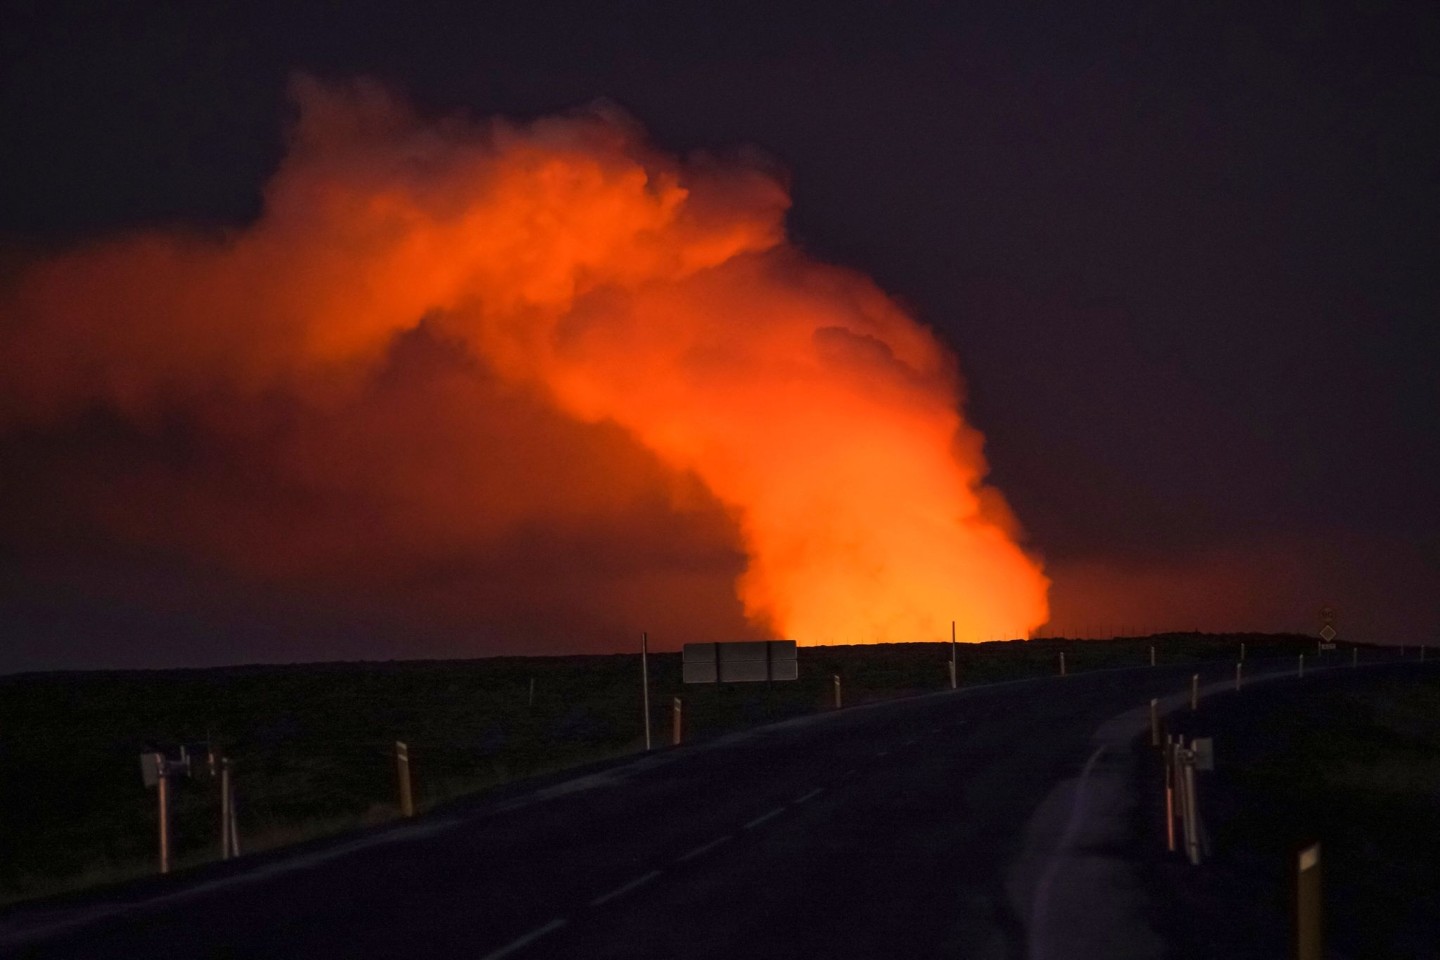 Blick auf die Gaswolke, die von der Lava des ausbrechenden Vulkans beleuchtet wird.